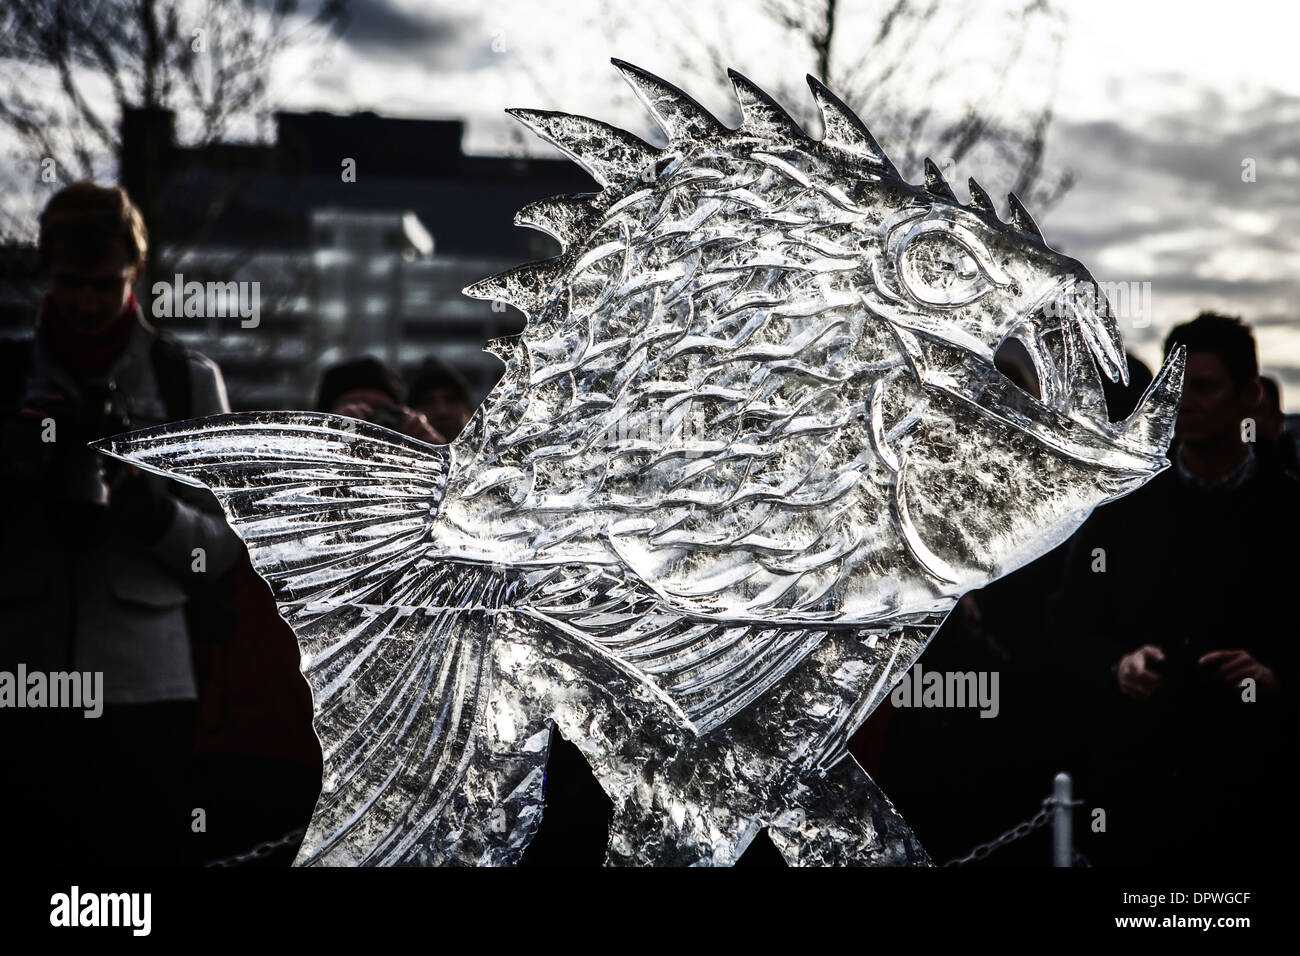 Le rétro-éclairage des sculptures en glace sculpter sculpture sculptures de glace piranha Banque D'Images